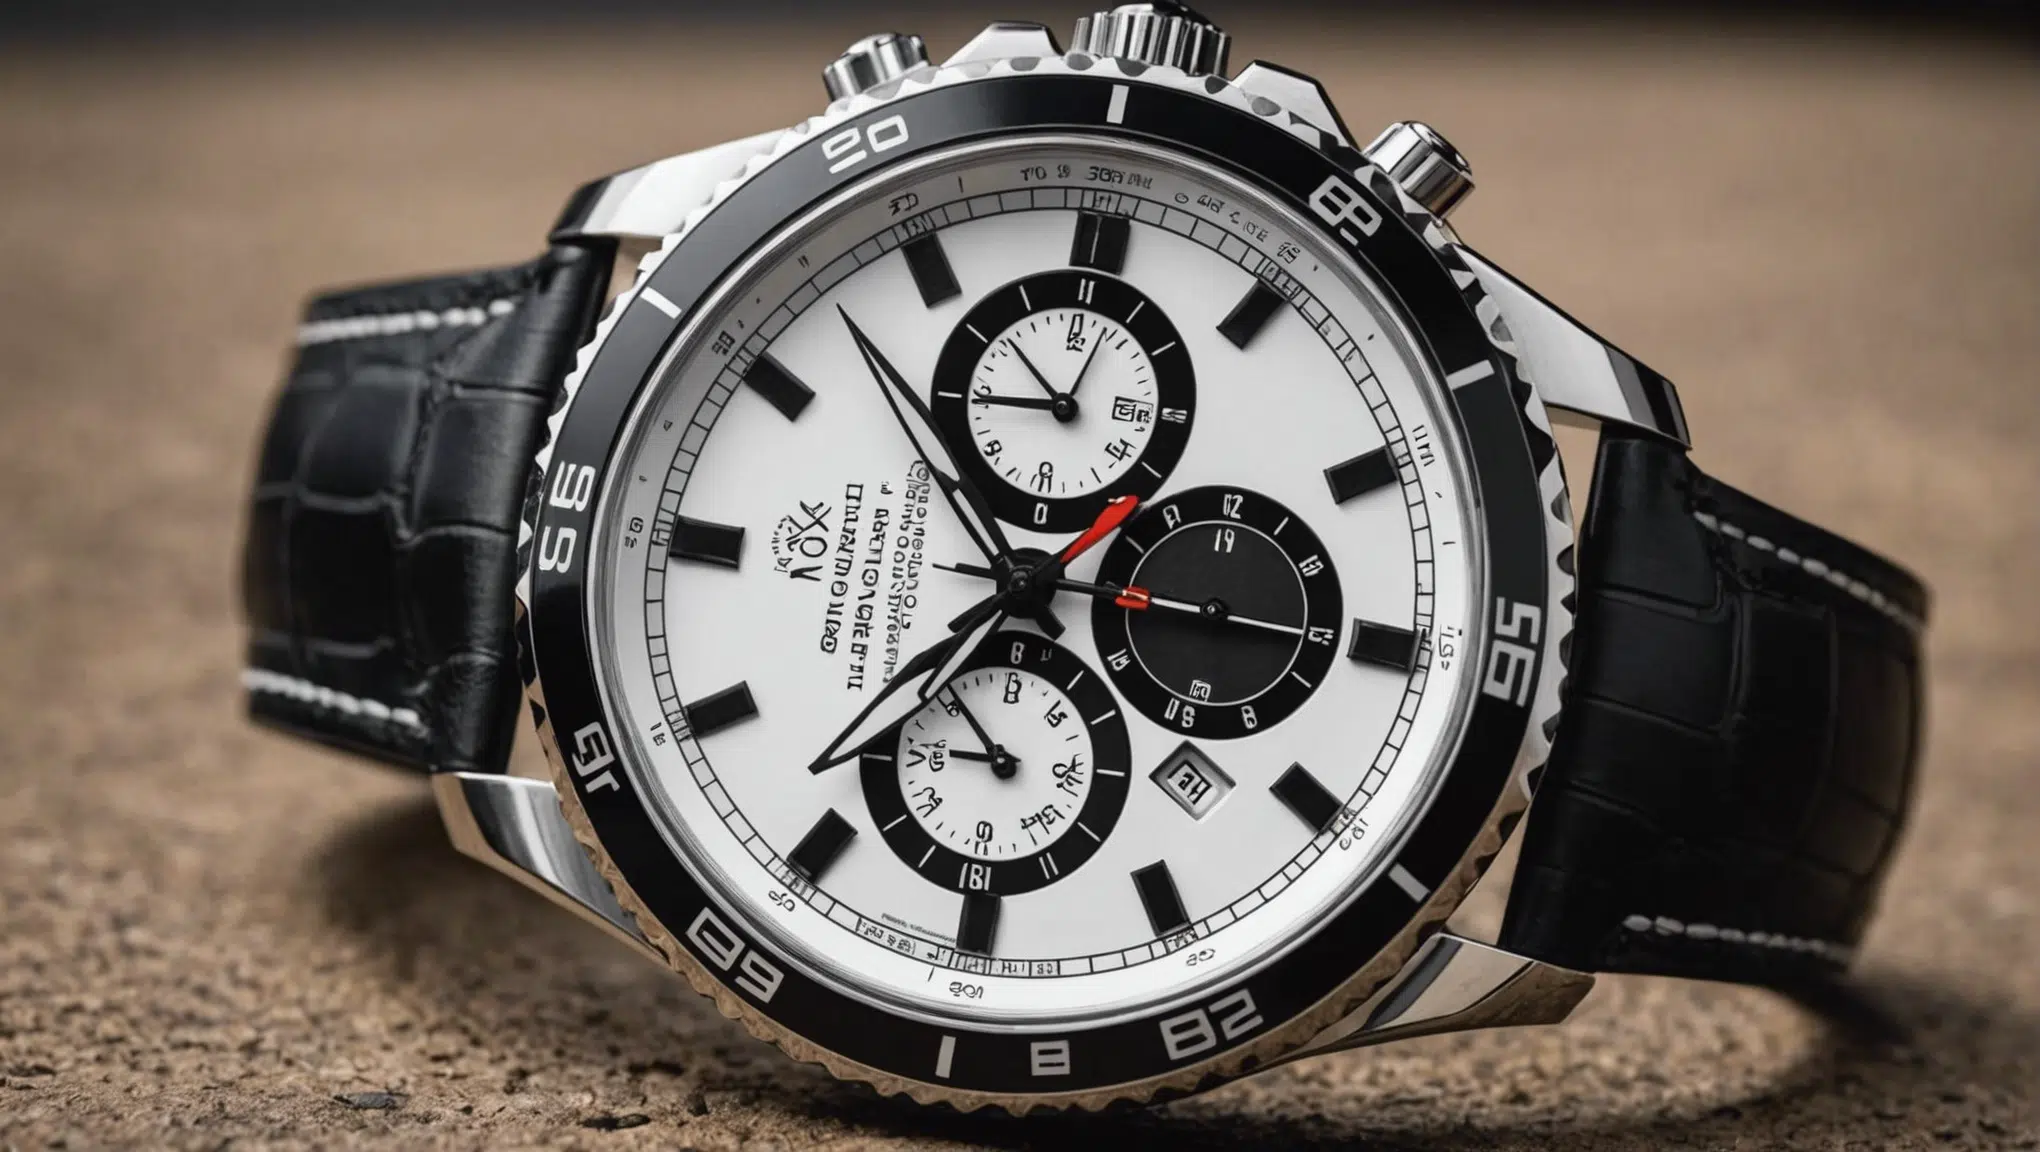 découvrez les 8 modèles incontournables de montres blanches pour homme : audemars piguet, swatch, rolex, omega, rado, et plus encore. trouvez la montre qui correspond le mieux à votre style.